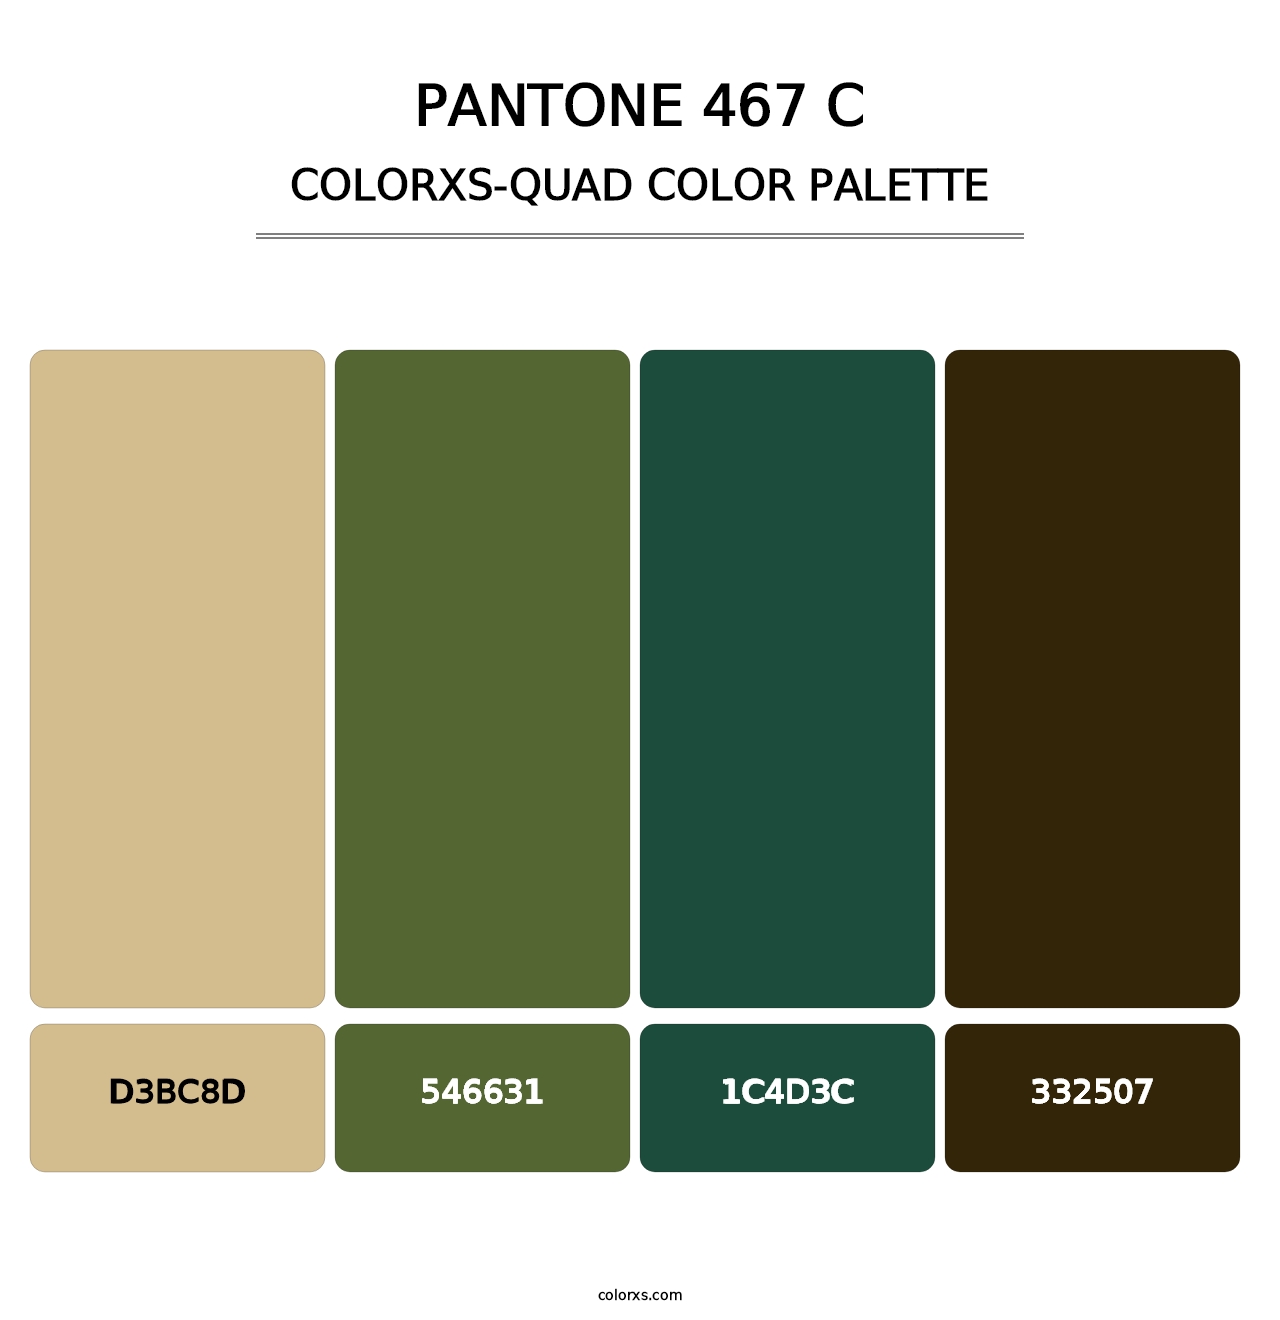 PANTONE 467 C - Colorxs Quad Palette